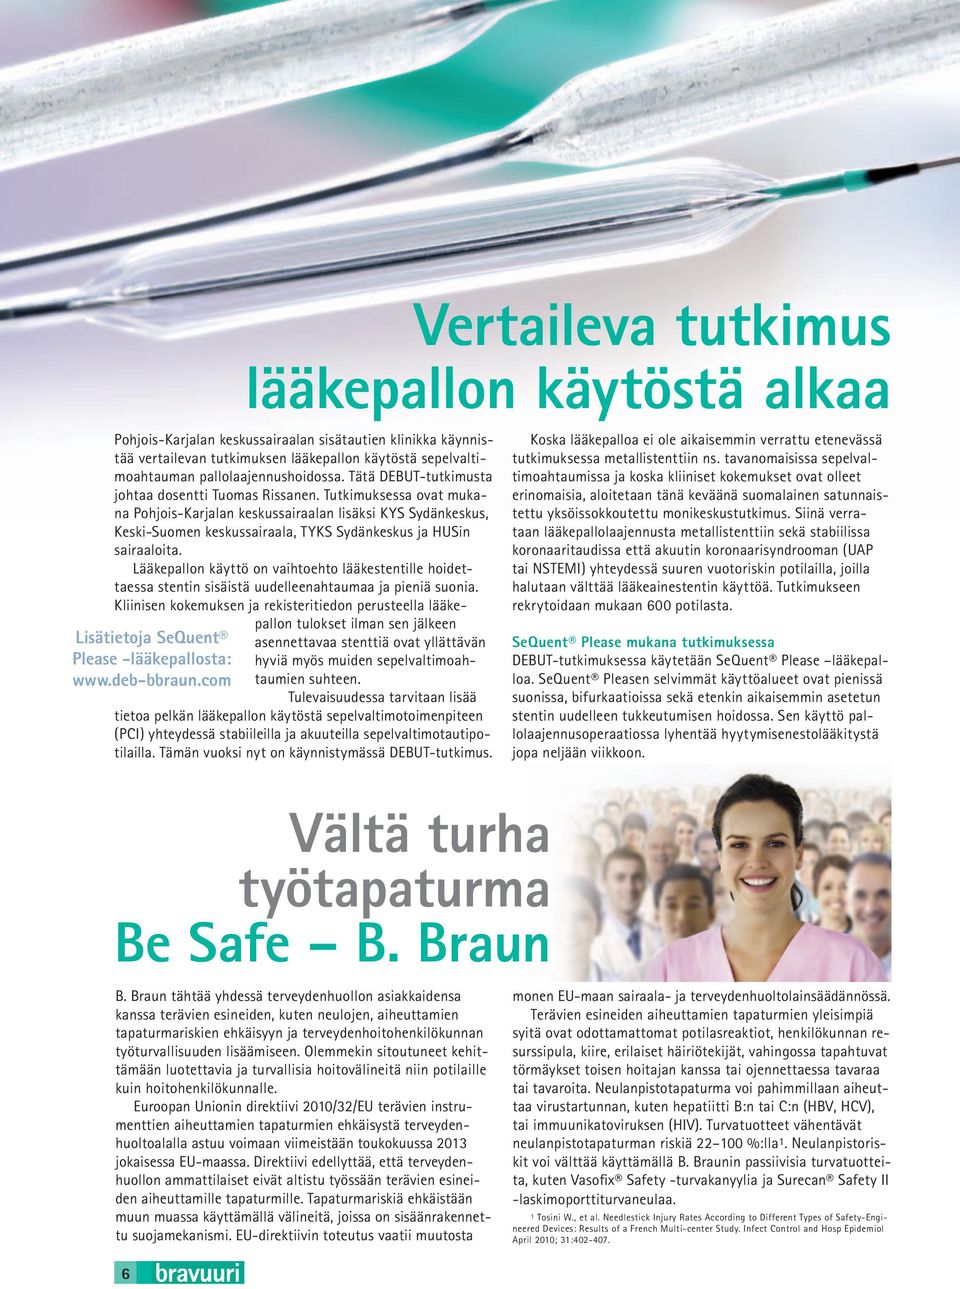 Tutkimuksessa ovat mukana Pohjois-Karjalan keskussairaalan lisäksi KYS Sydänkeskus, Keski-Suomen keskussairaala, TYKS Sydänkeskus ja HUSin sairaaloita.